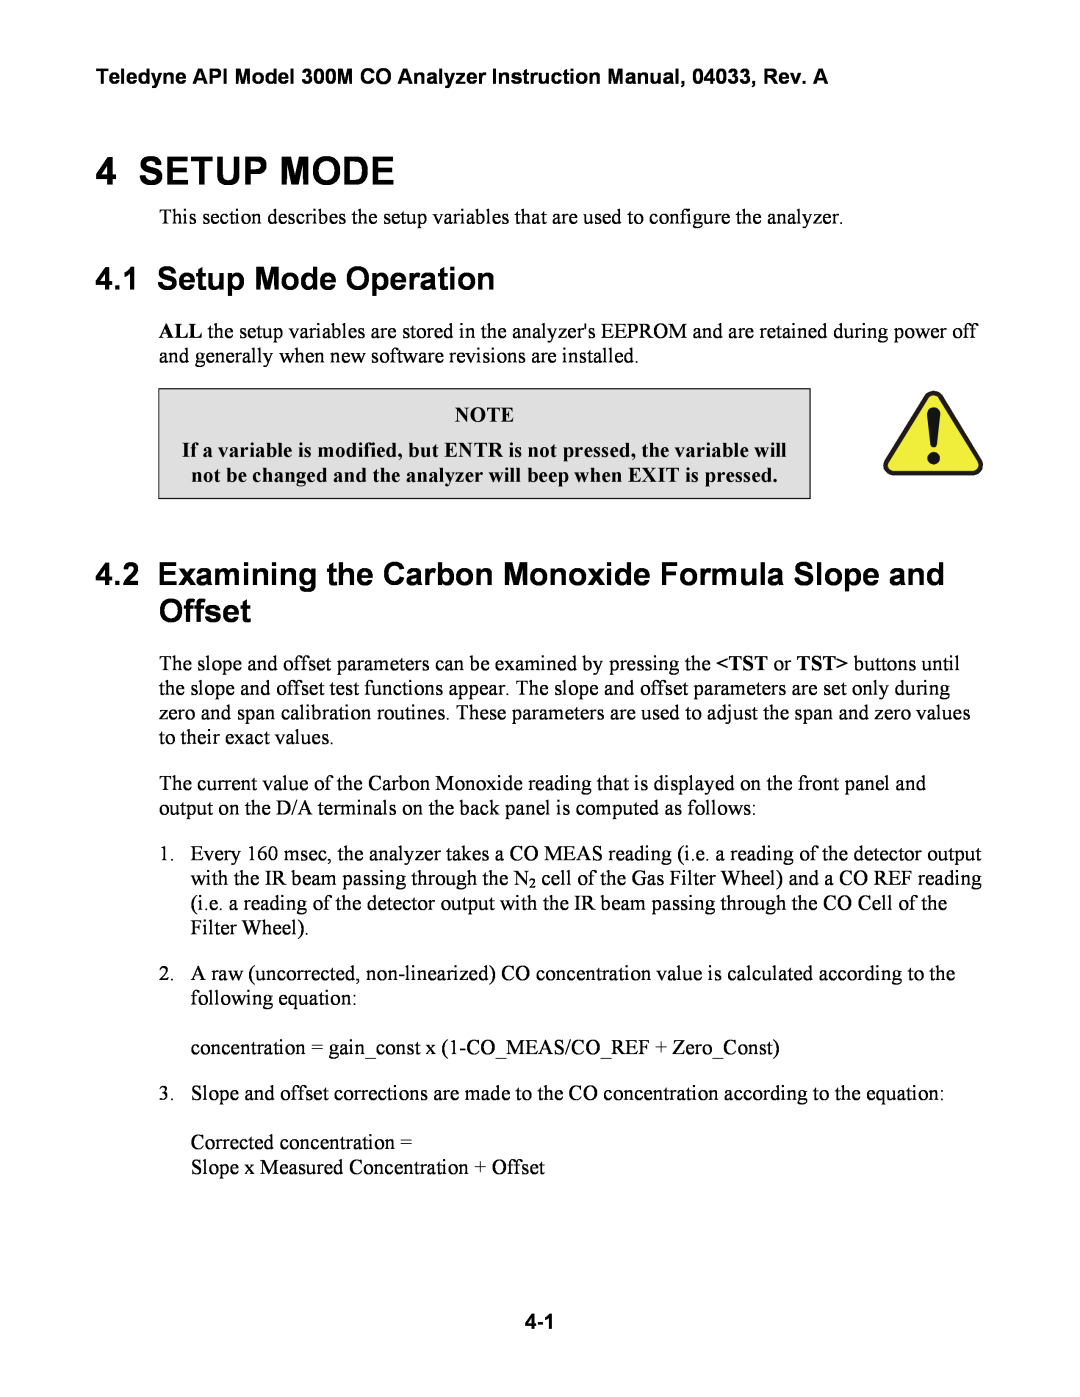 Teledyne 300M instruction manual Setup Mode Operation 